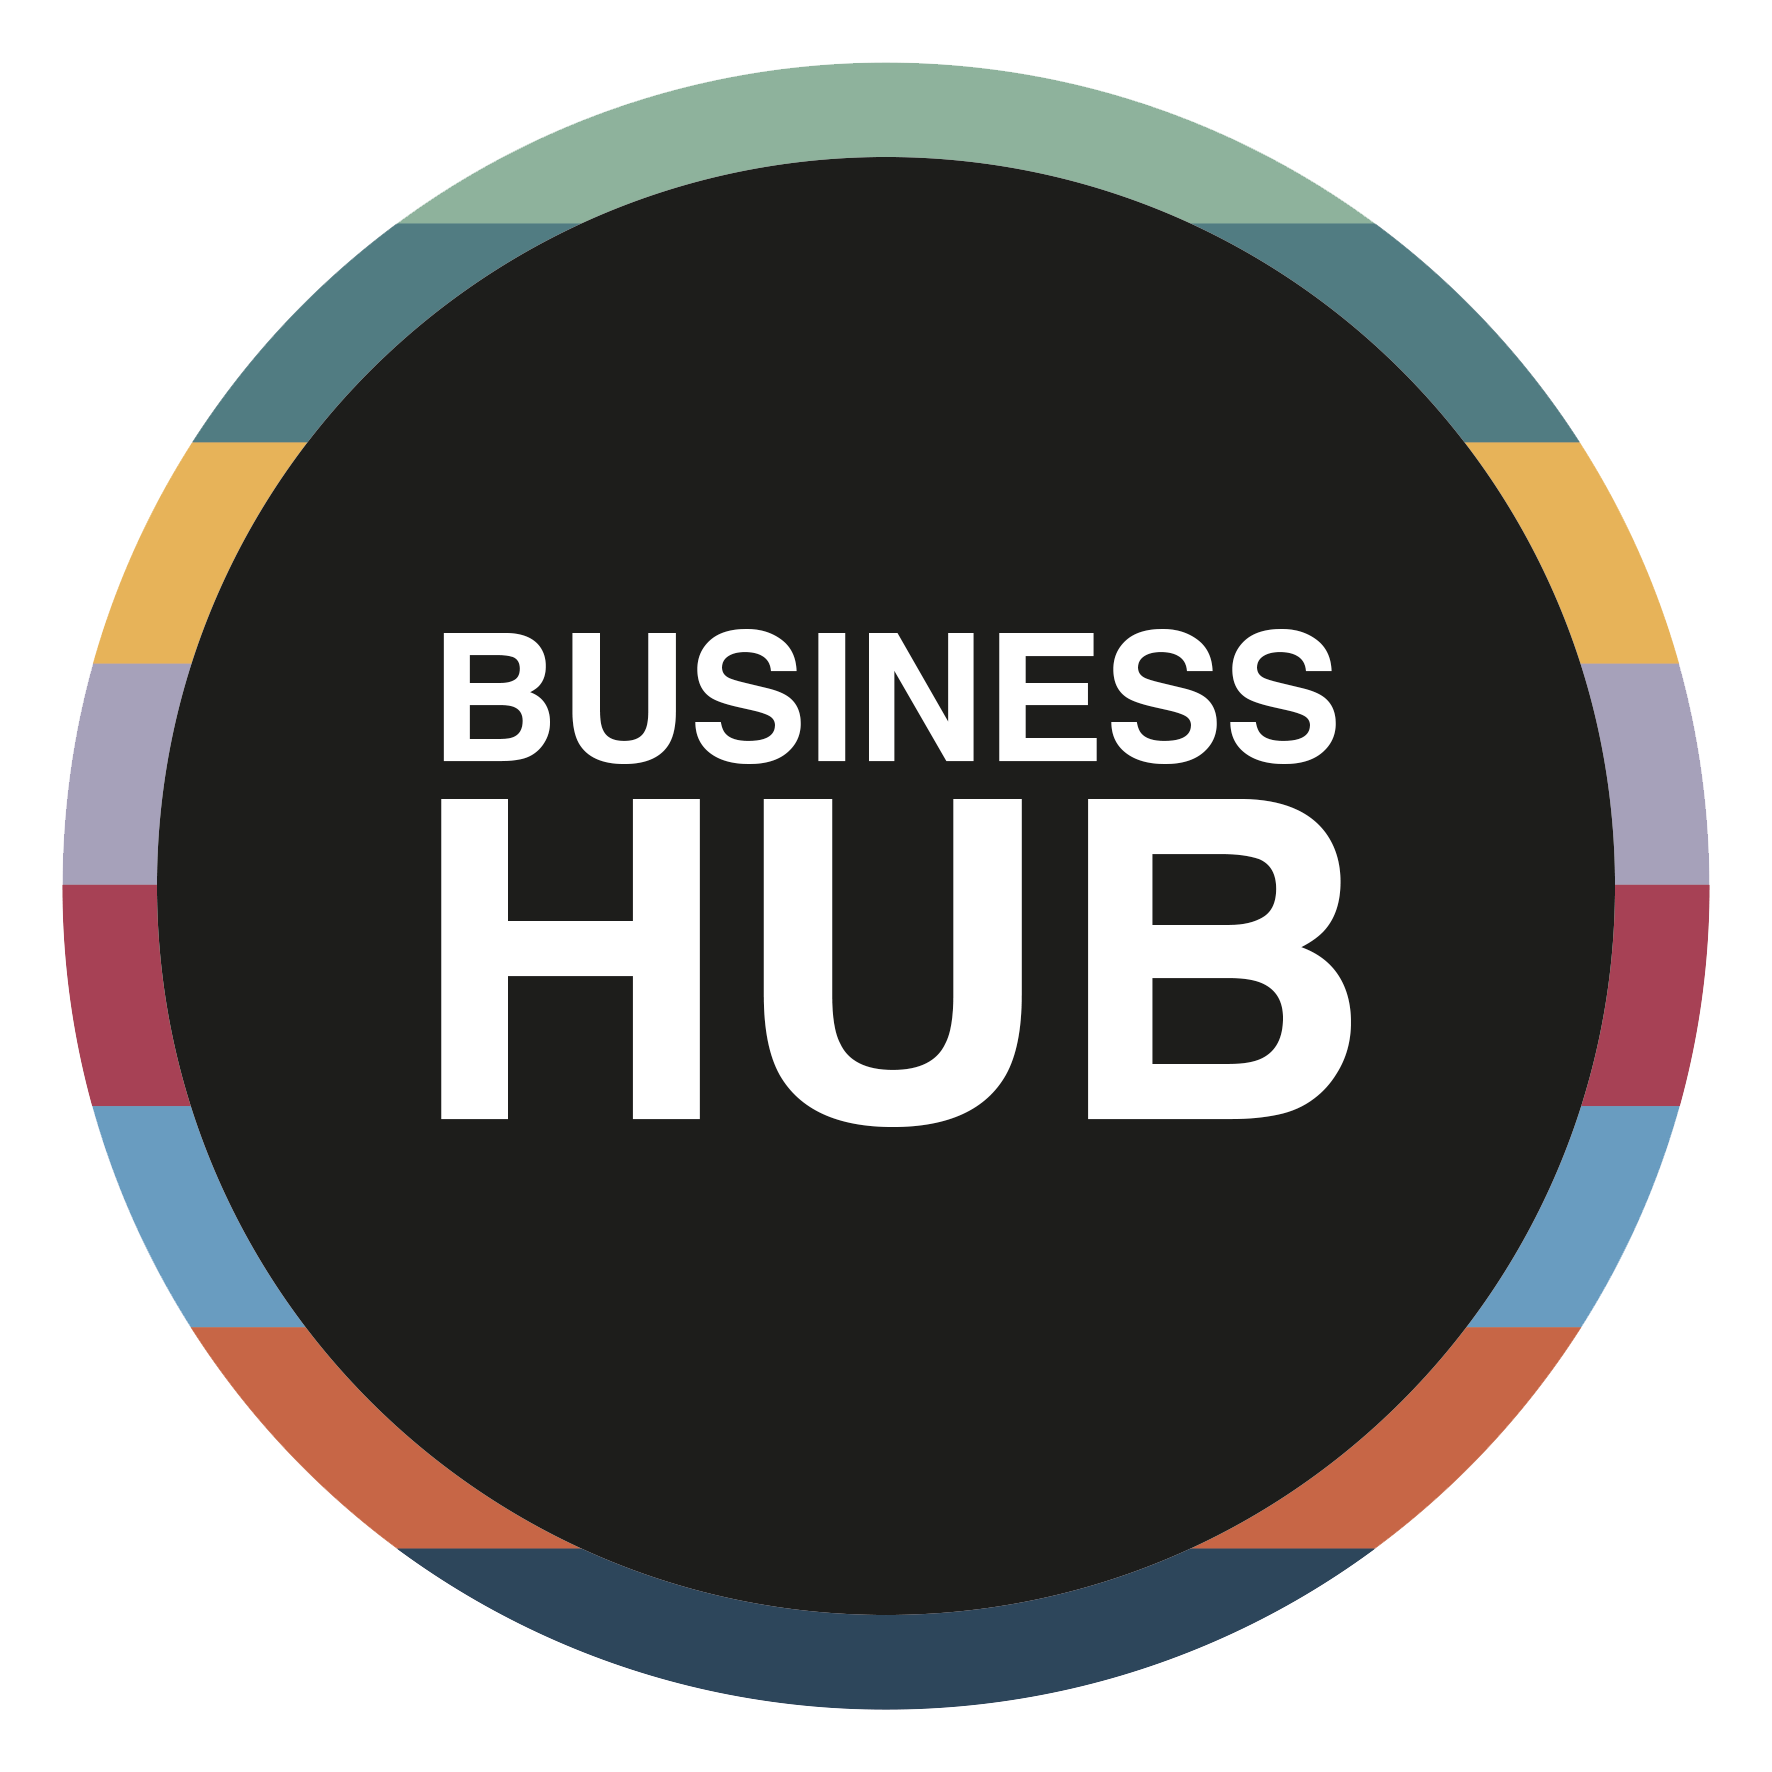 Business hub icon